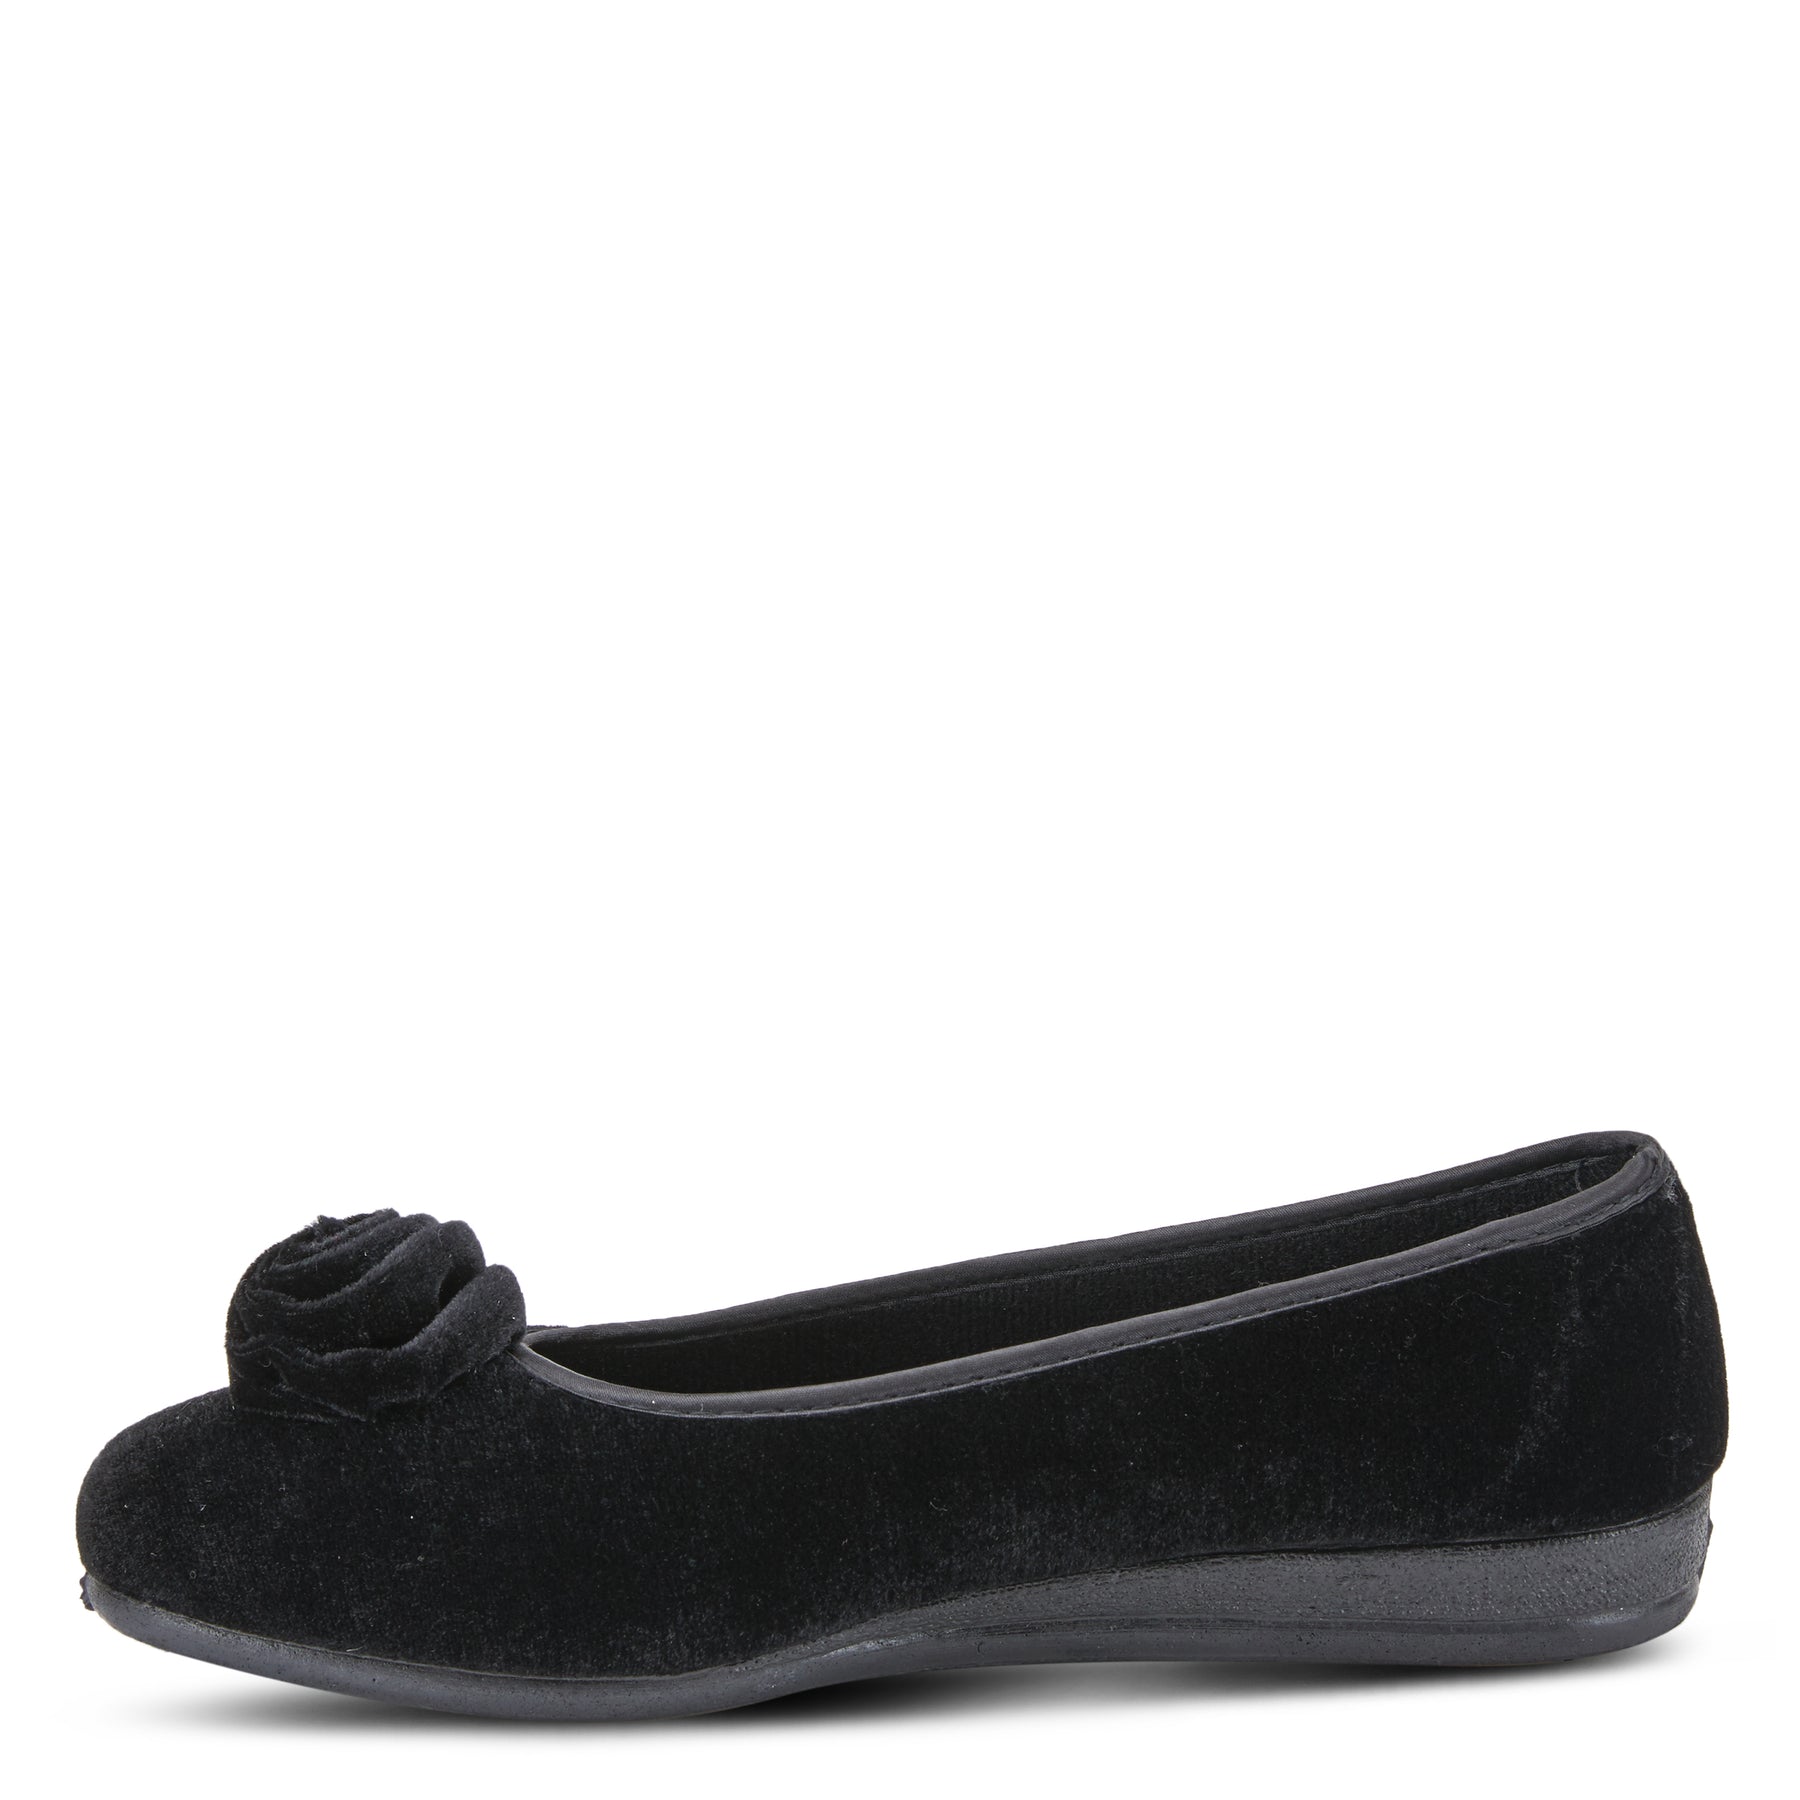 BLACK ROSELOUD SLIPPER by FLEXUS – Spring Step Shoes